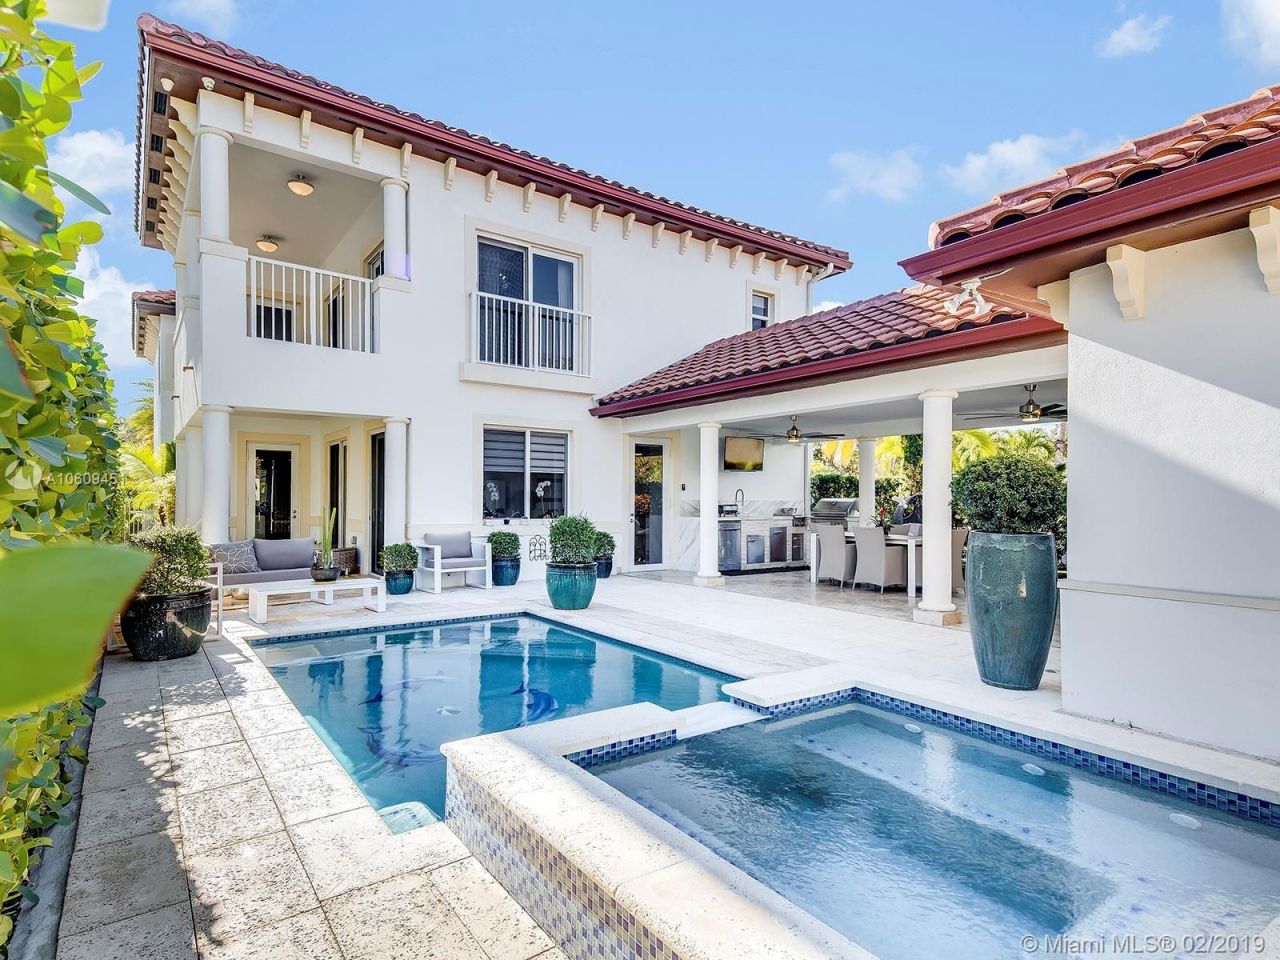 Villa in Miami, USA, 320 sq.m - picture 1